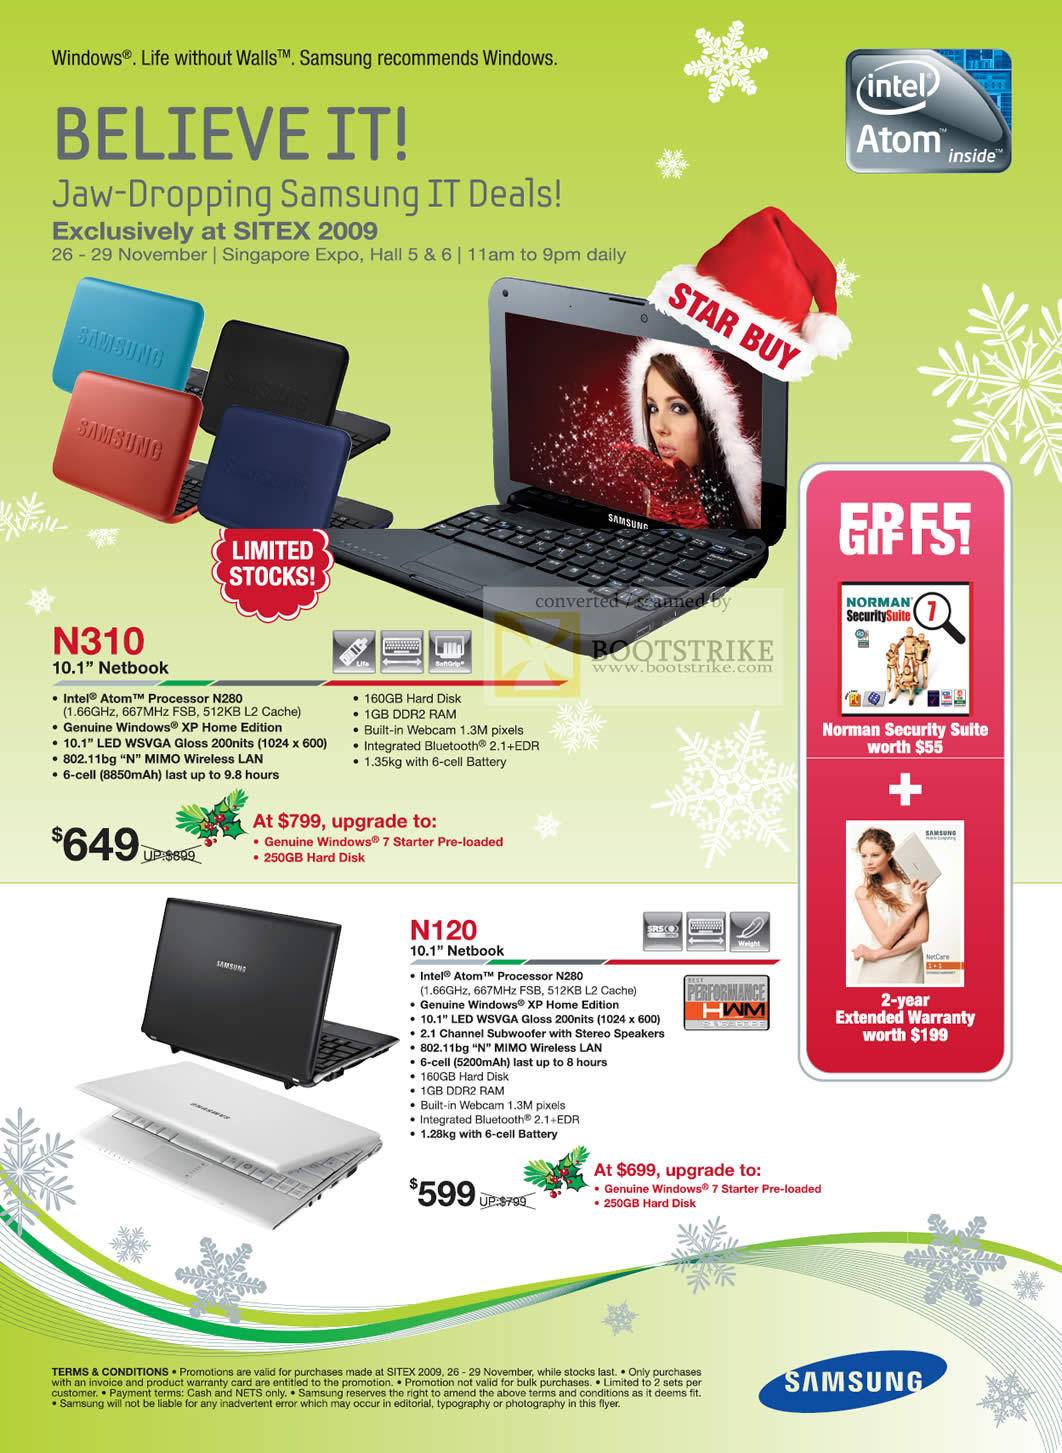 Sitex 2009 price list image brochure of Samsung Netbooks N310 N120